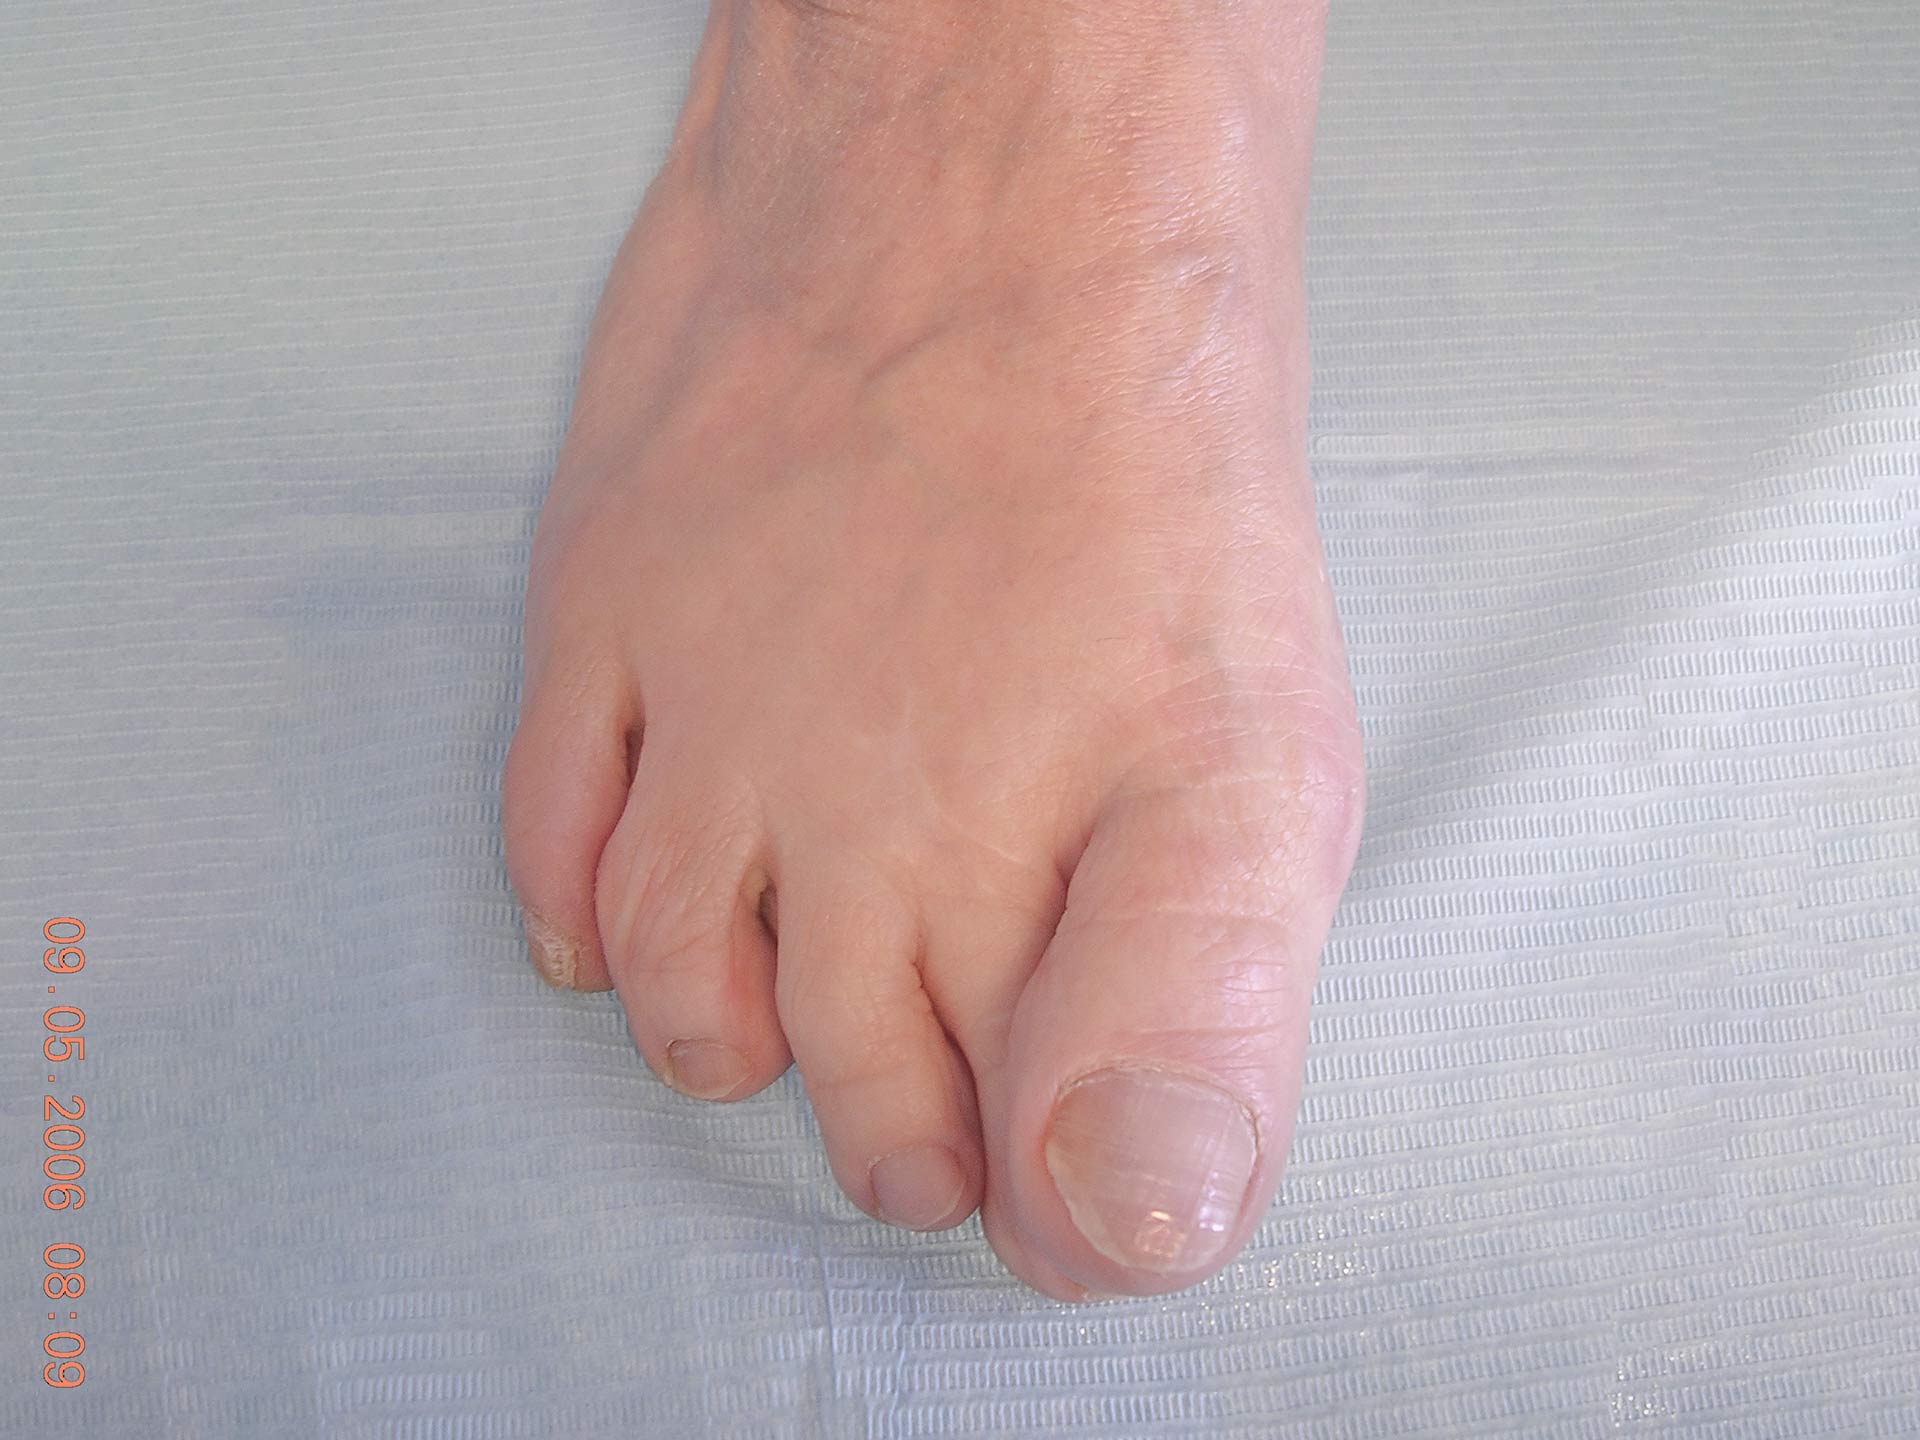 Maestro y Alejo Podología | Tratamiento quirúrgico de juanete con dedo por encima de segundo dedo (primer dedo supracutus) | Preoperatorio 2